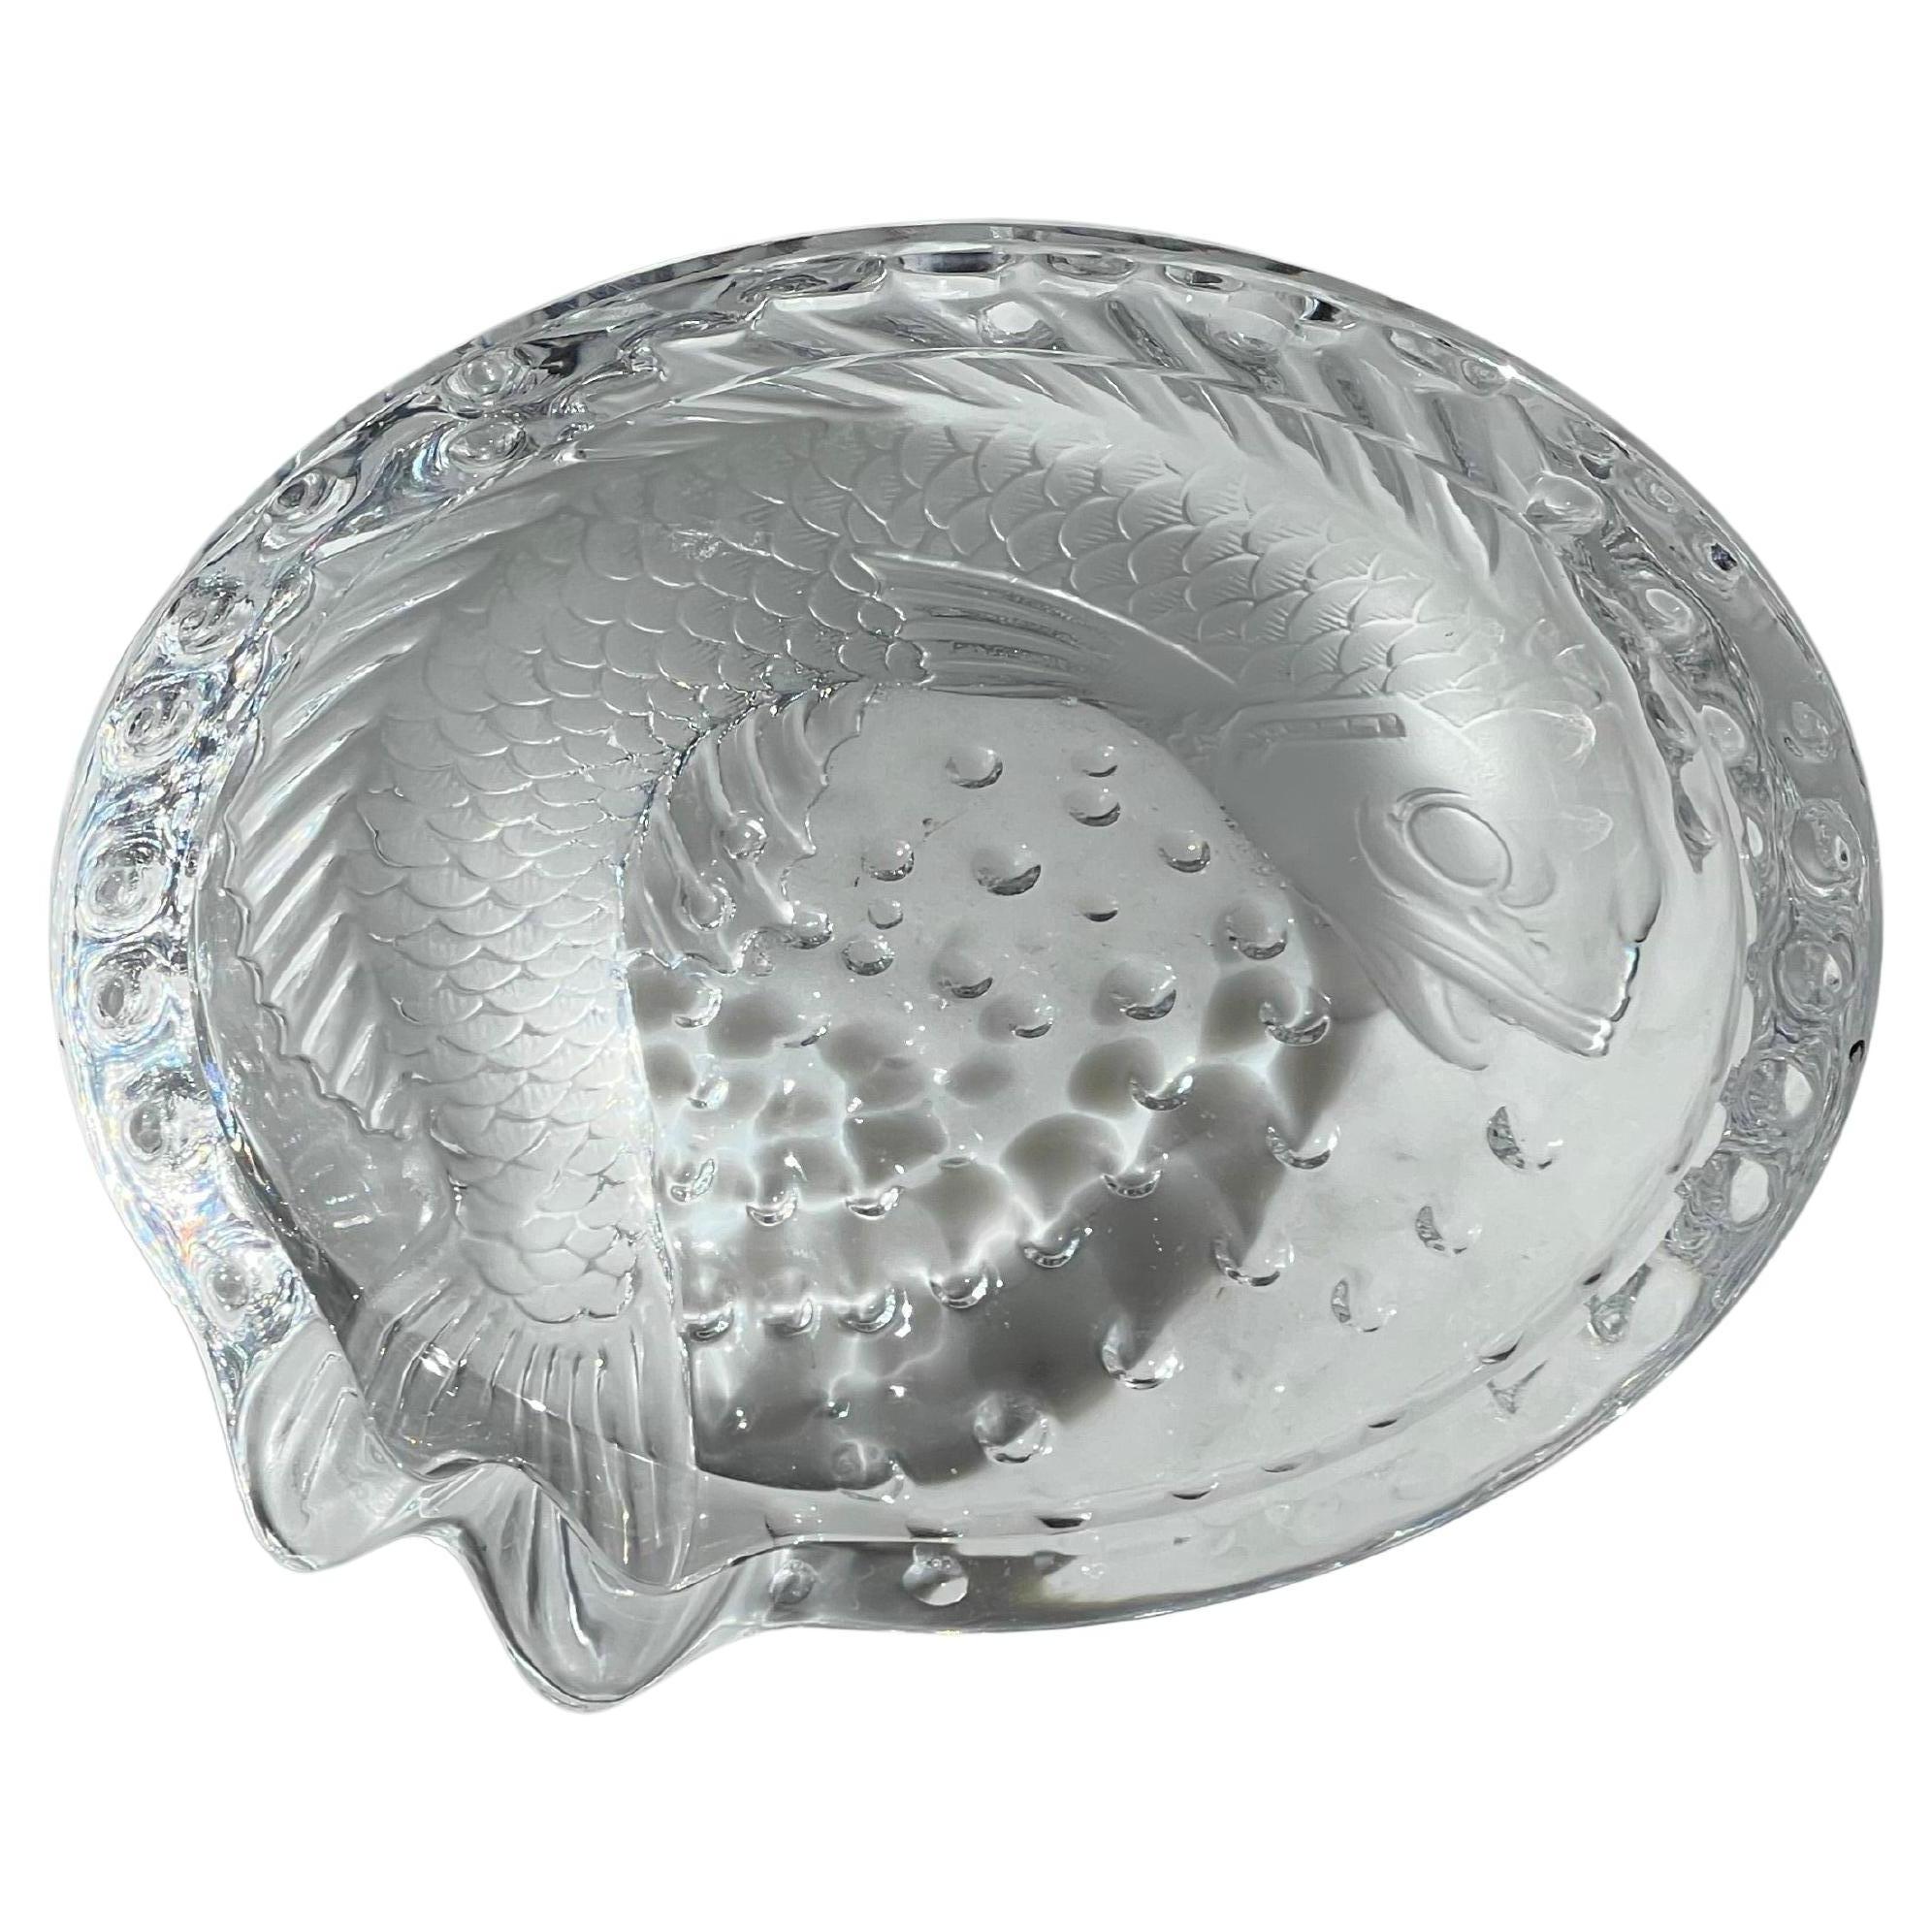 Aschenbecher mit Fischmotiv aus Kristall von Lalique